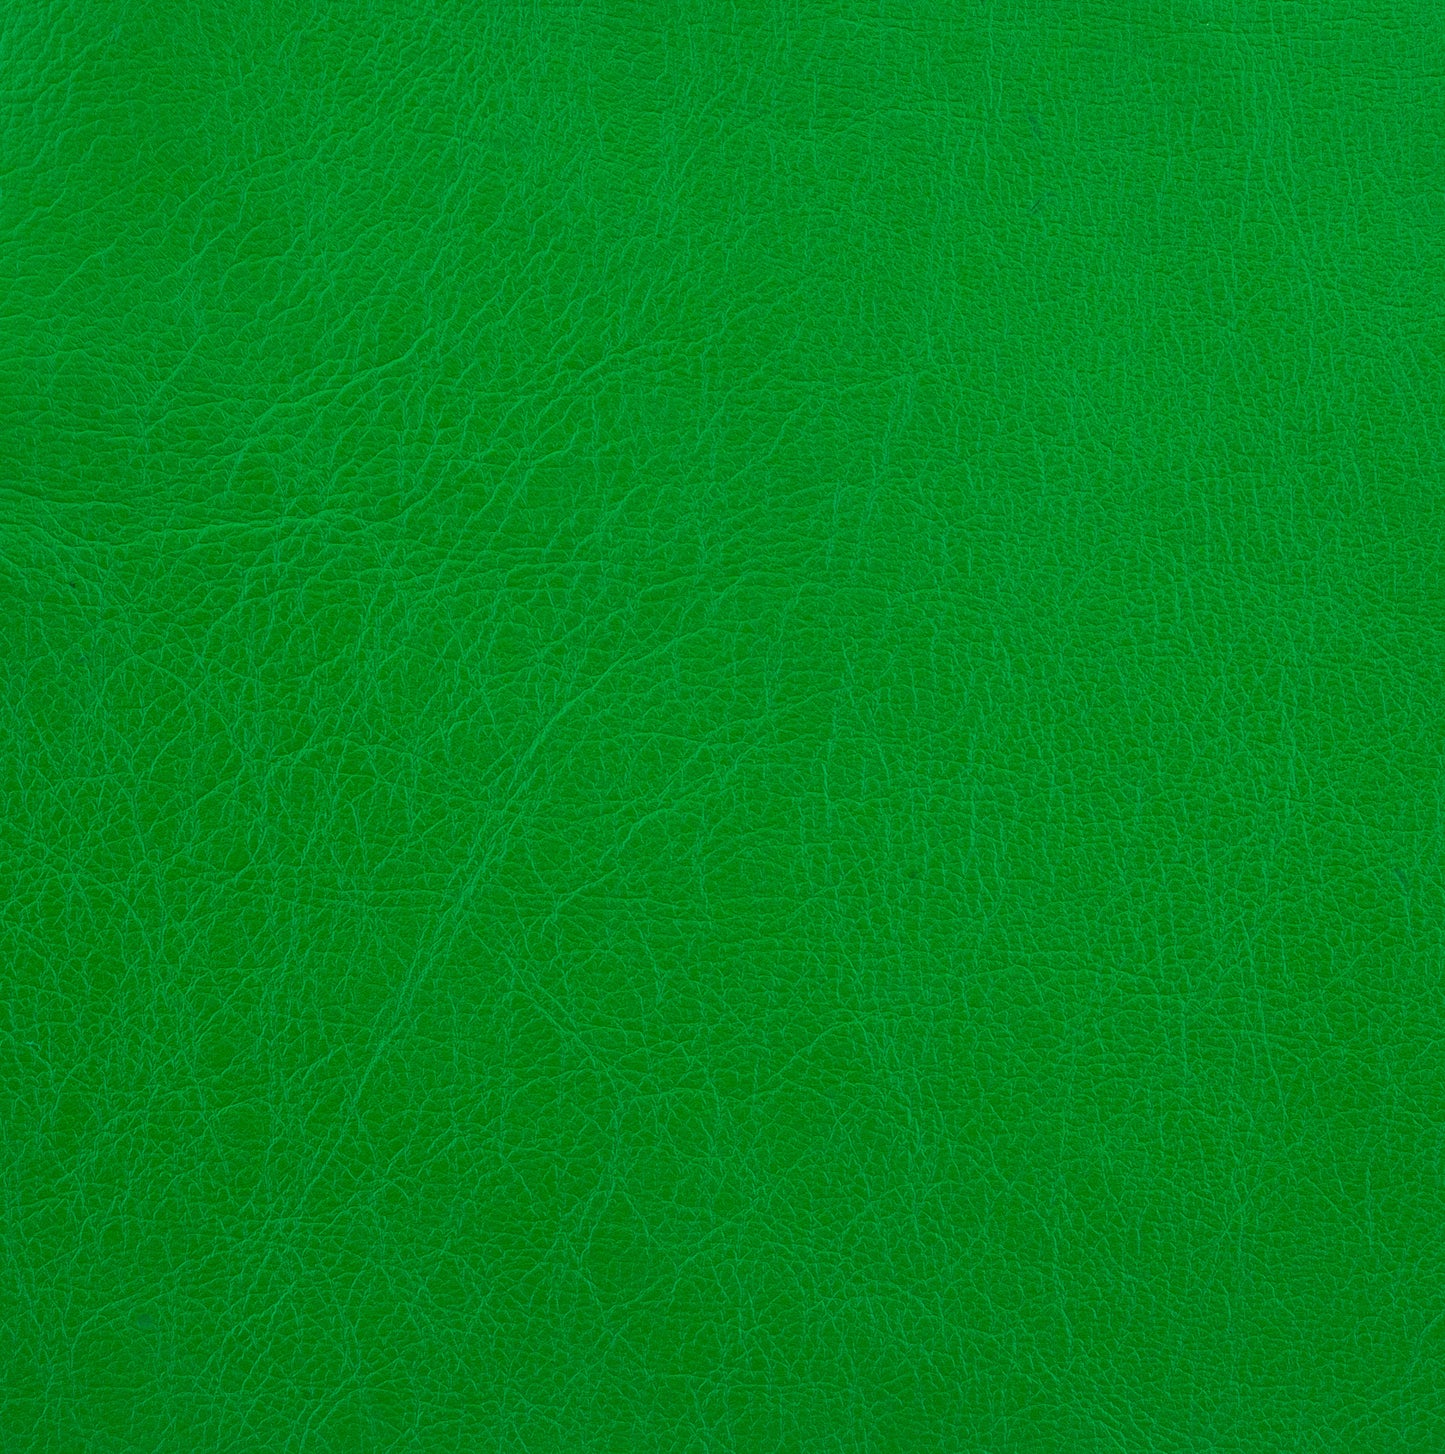 Fern Green - Kangaroo Leather